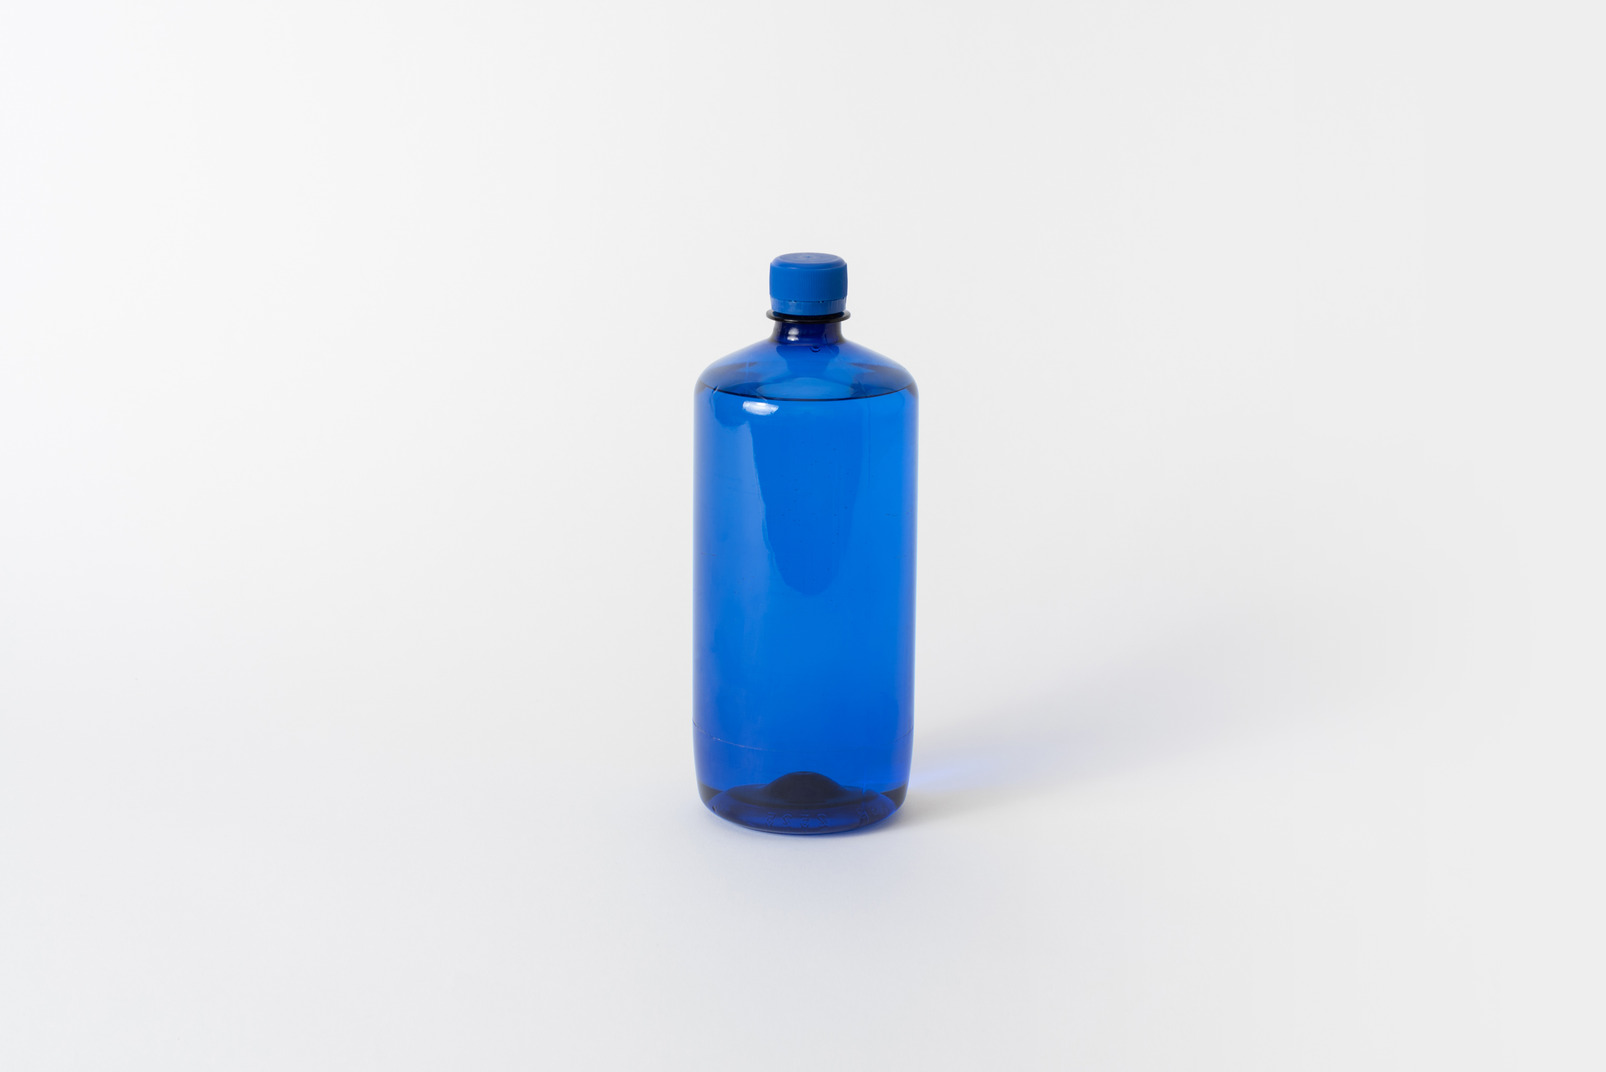 Blue household bottle